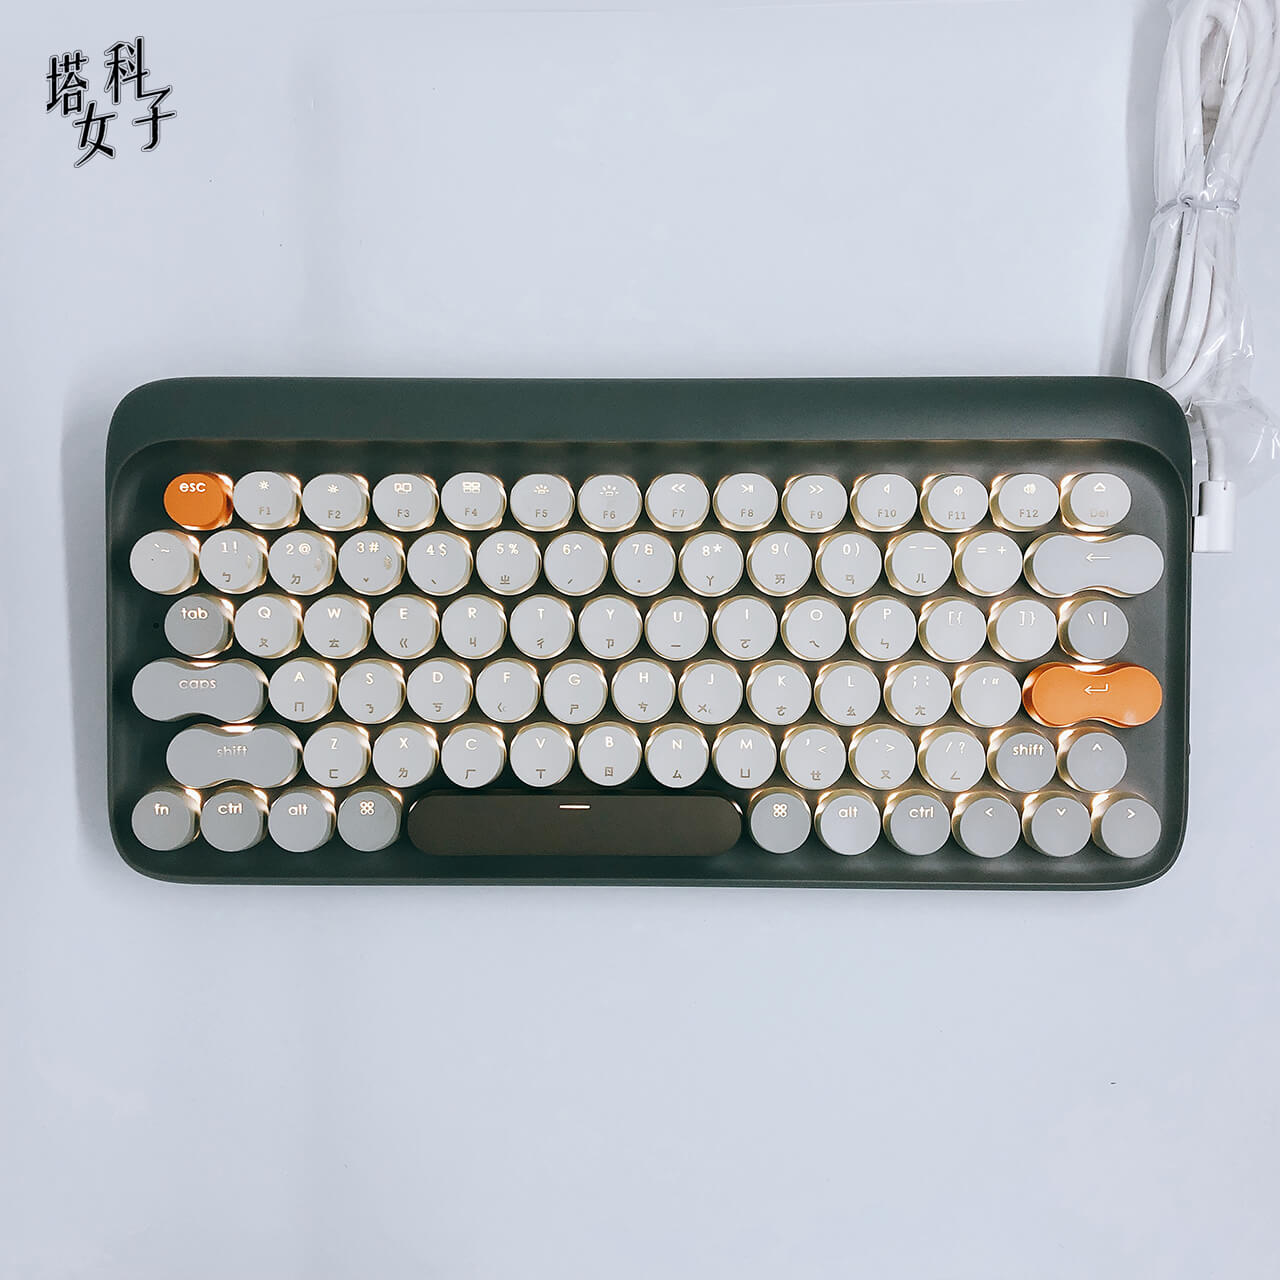 Lofree 打字機鍵盤 - 三段 LED 背光